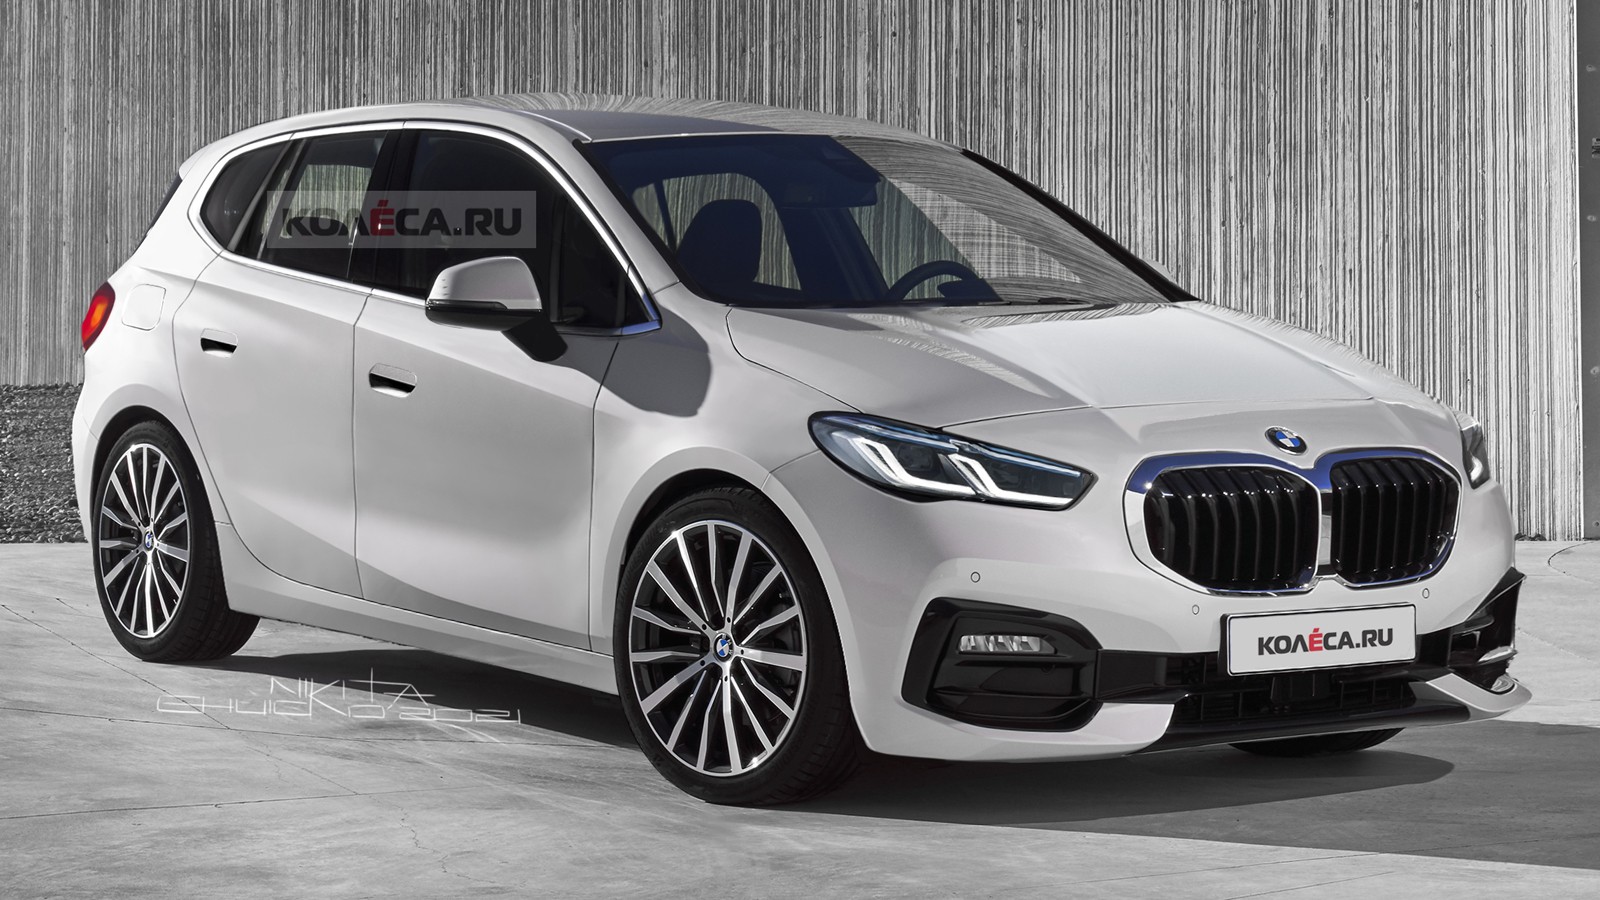 BMW 2 Series Active Tourer следующего поколения: новые изображения